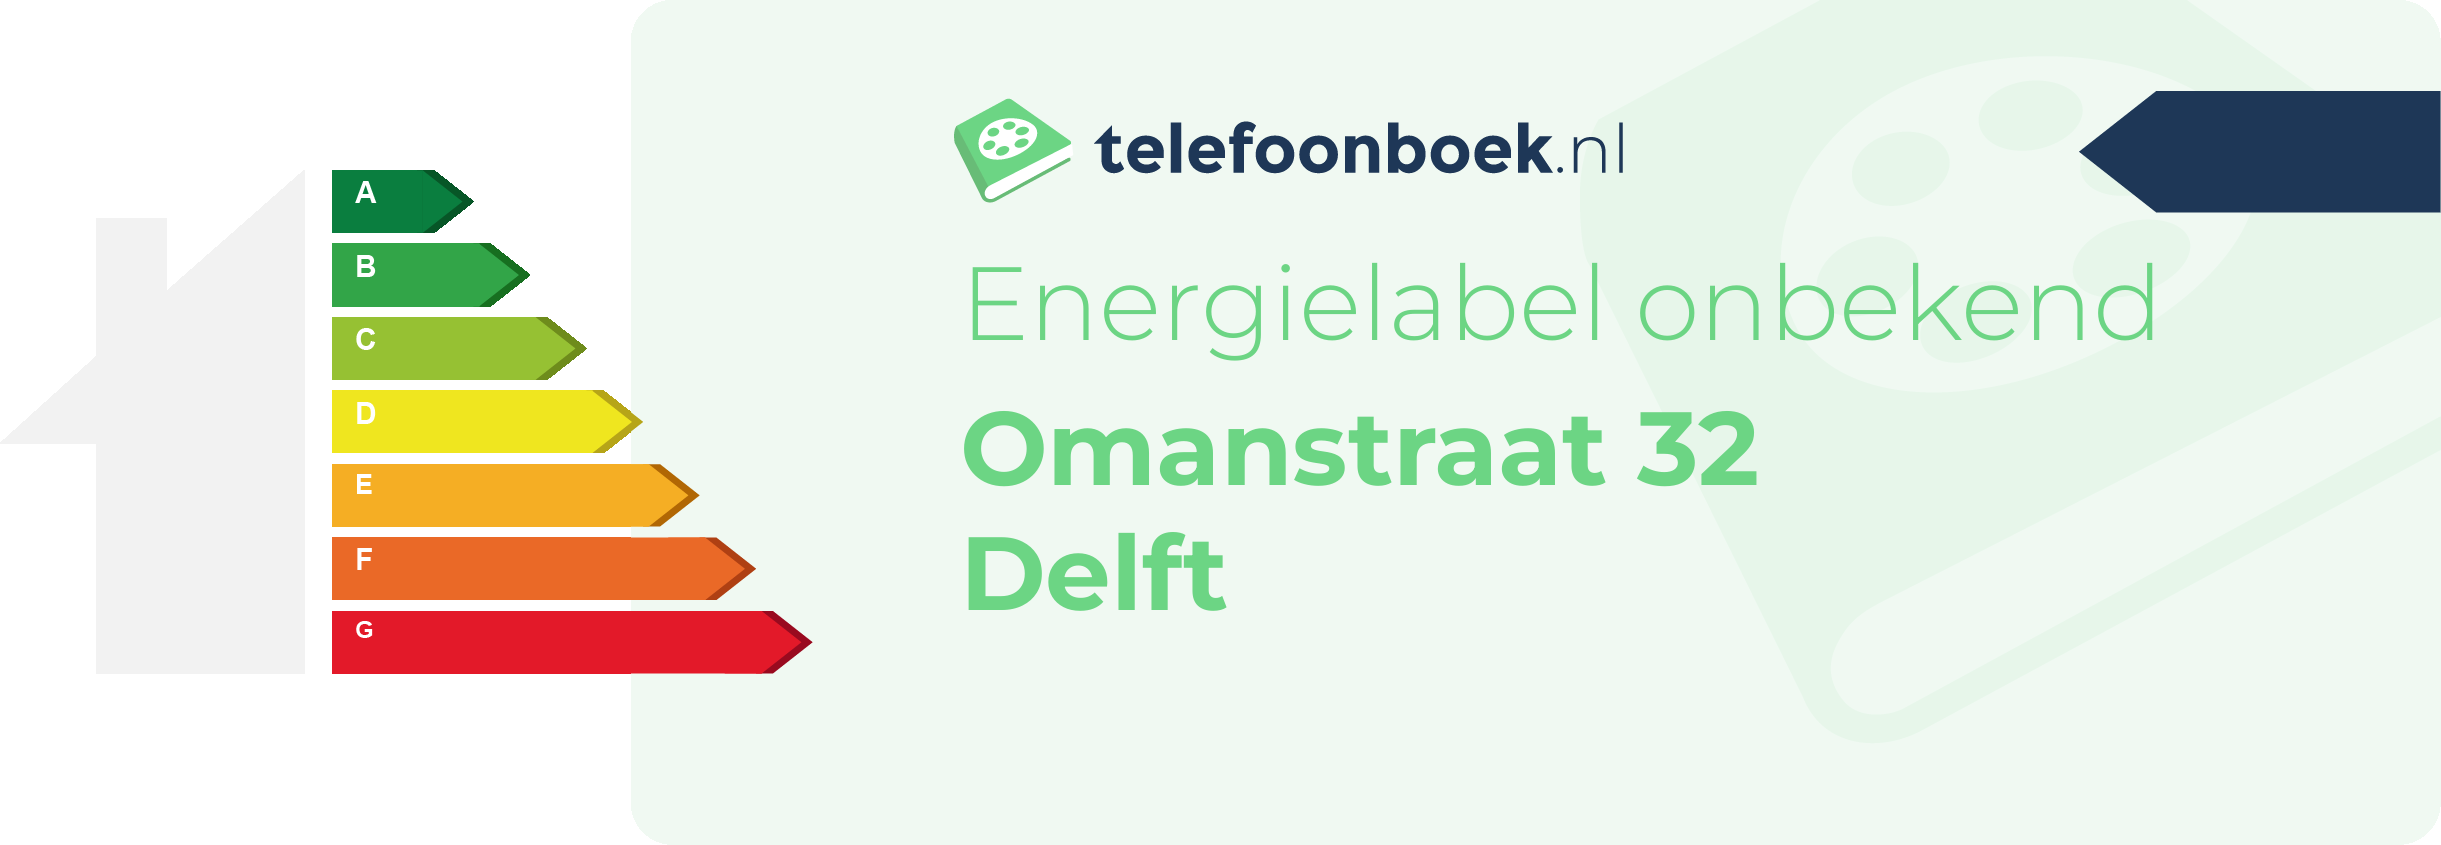 Energielabel Omanstraat 32 Delft